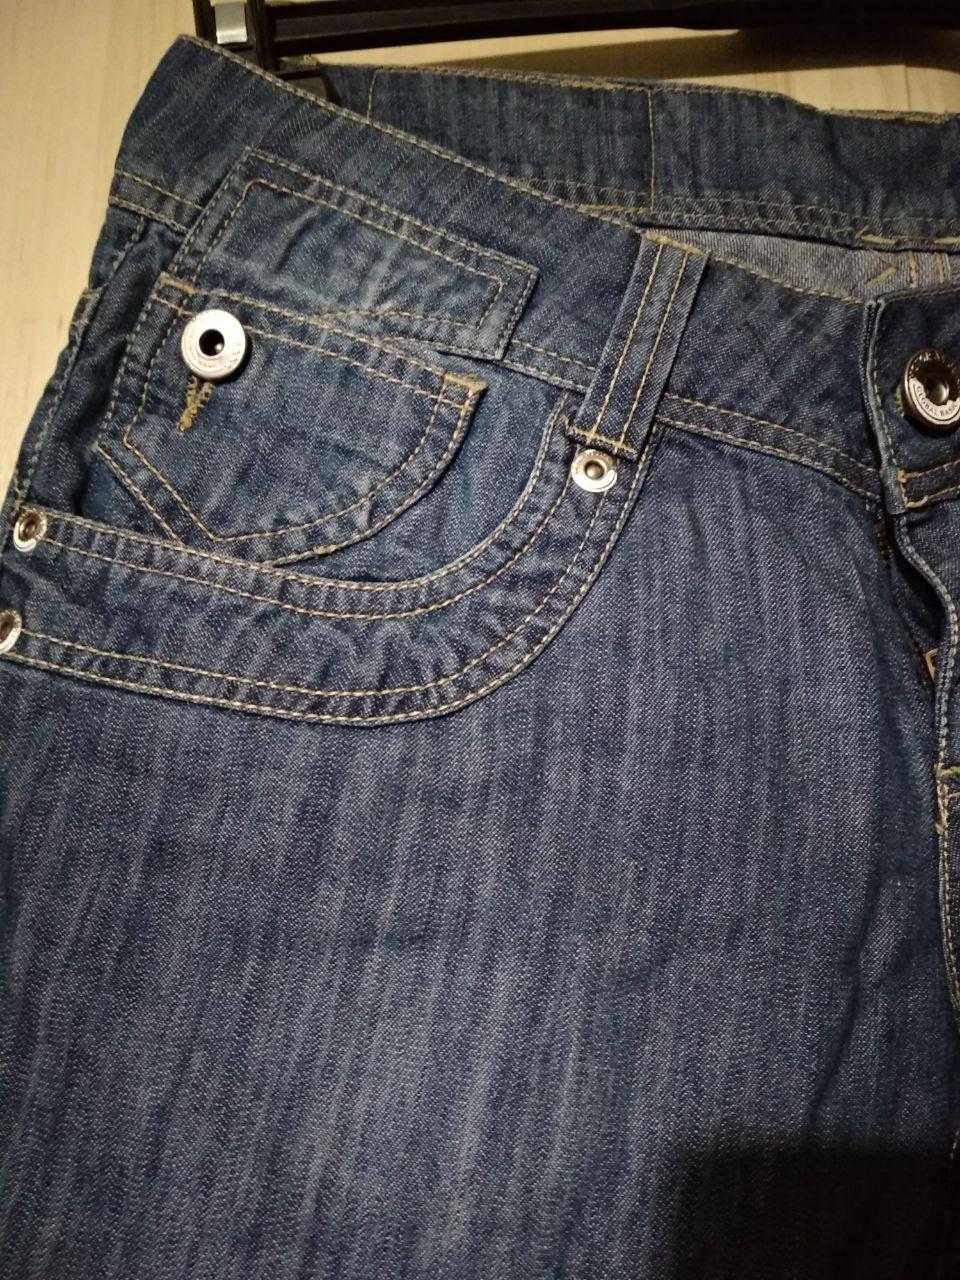 джинсы женские, размер W27/L34